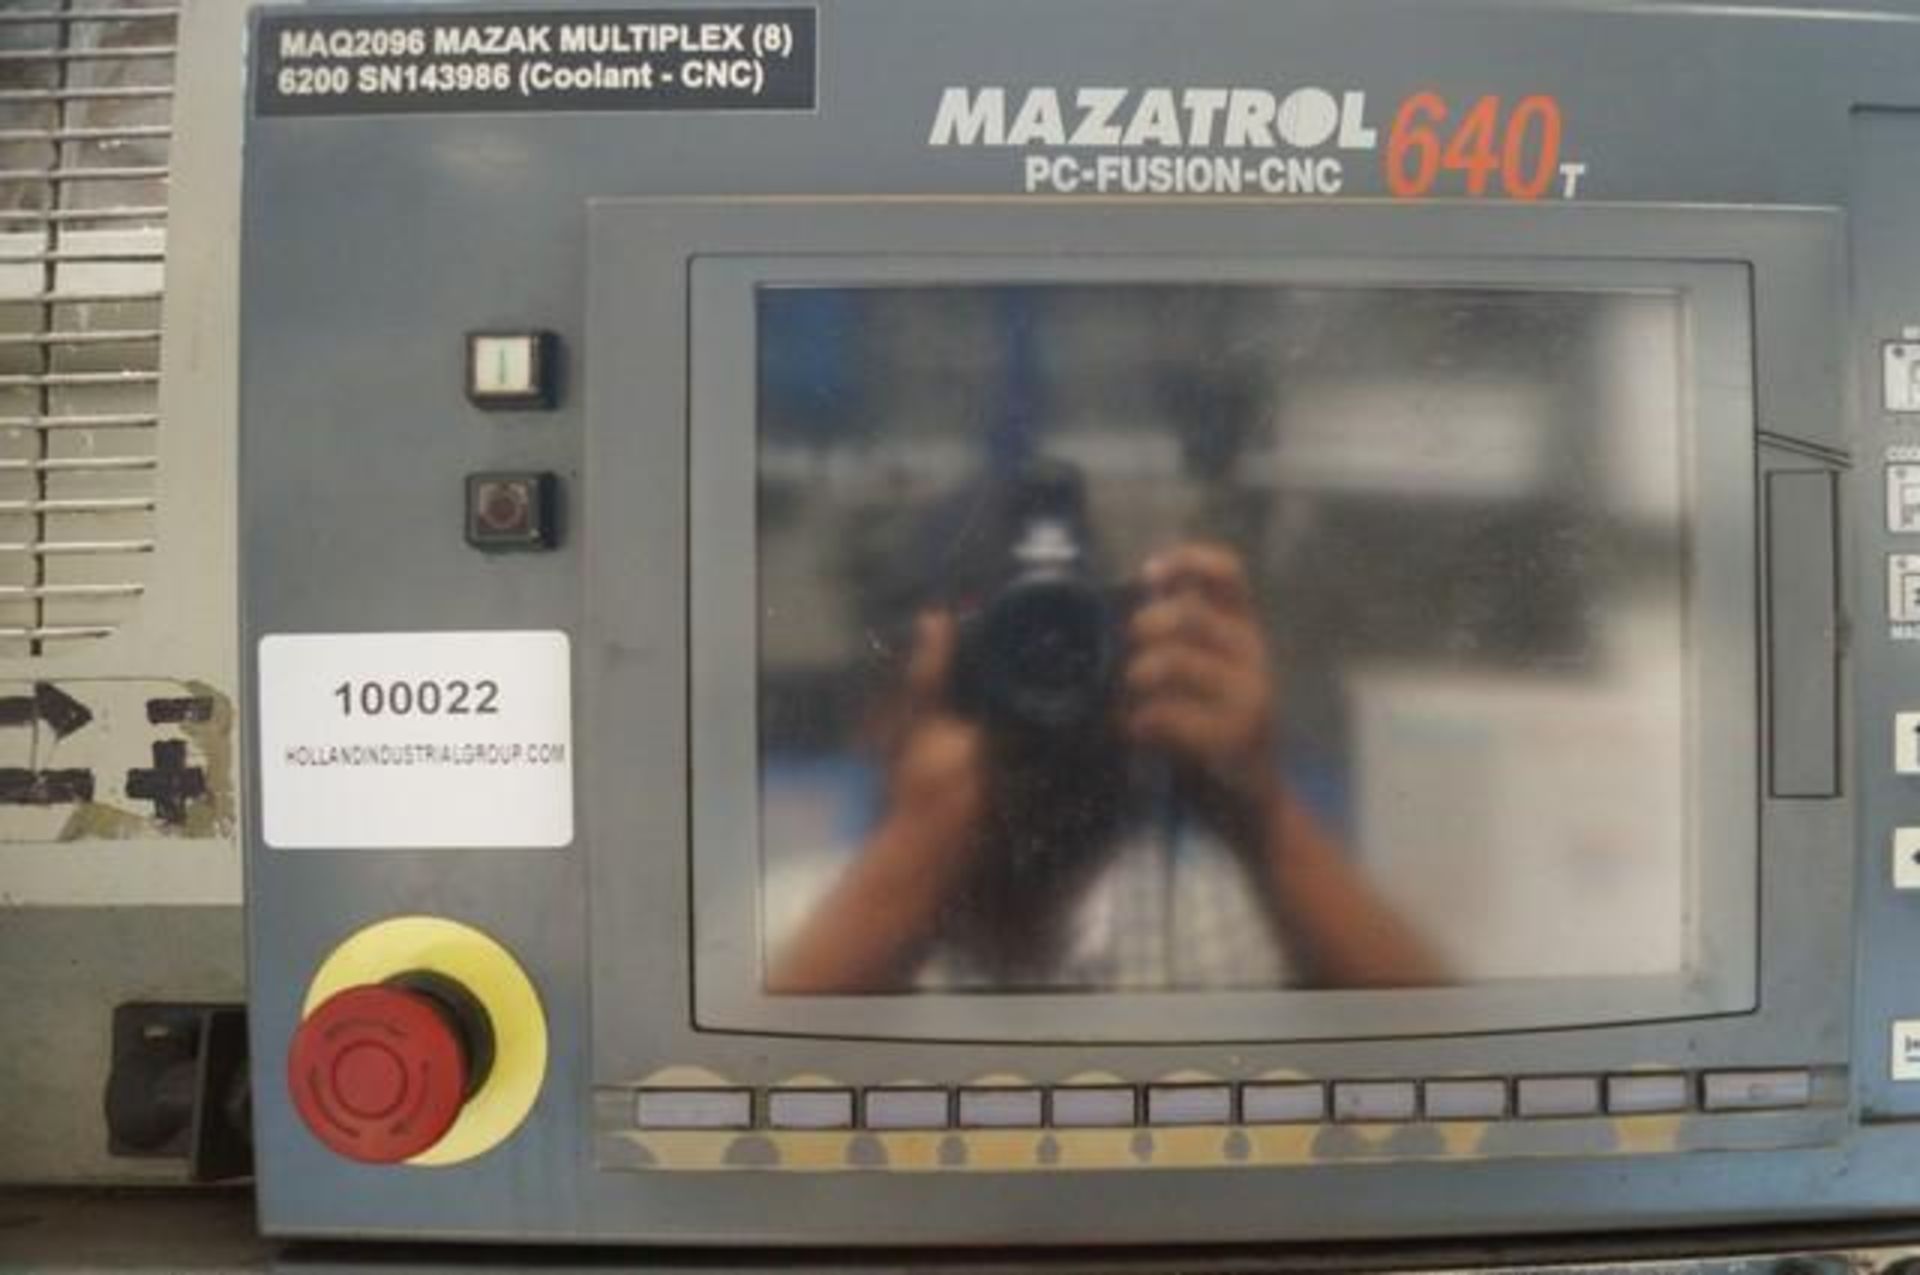 1999 MAZAK MULTIPLEX 6200 Horizontal Turning Center - Image 5 of 8